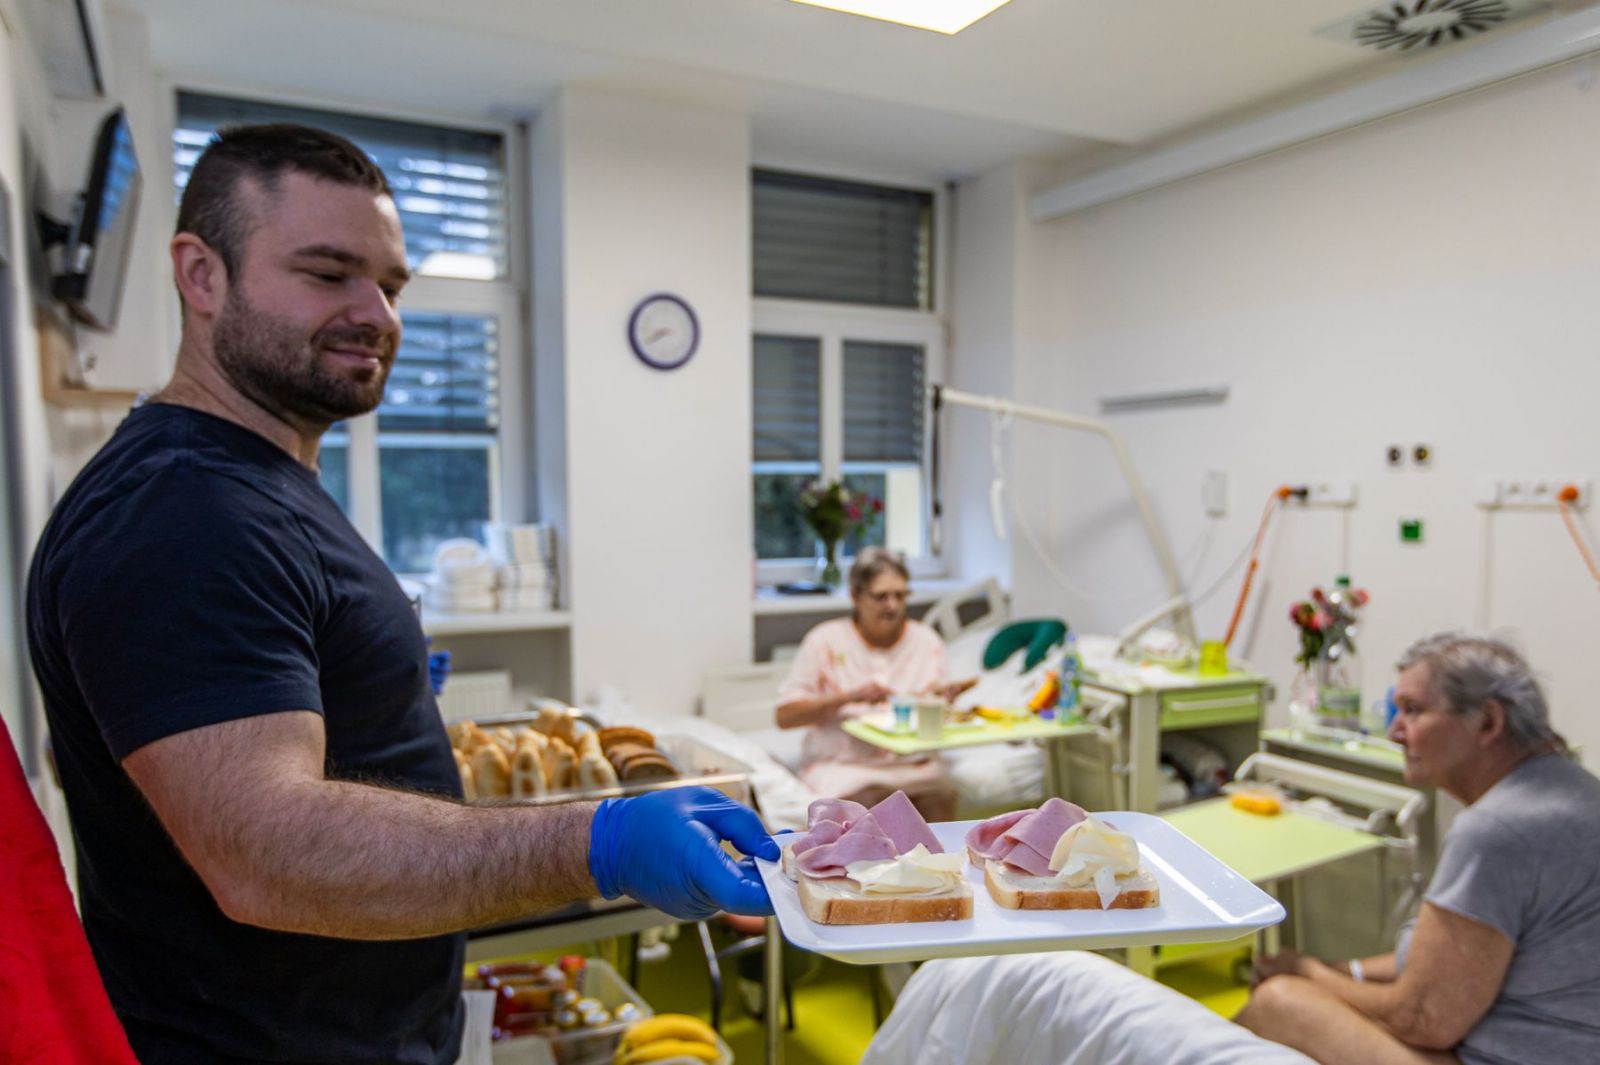 Pacienti následné péče ve Stodu mají snídaně ze švédského stolu